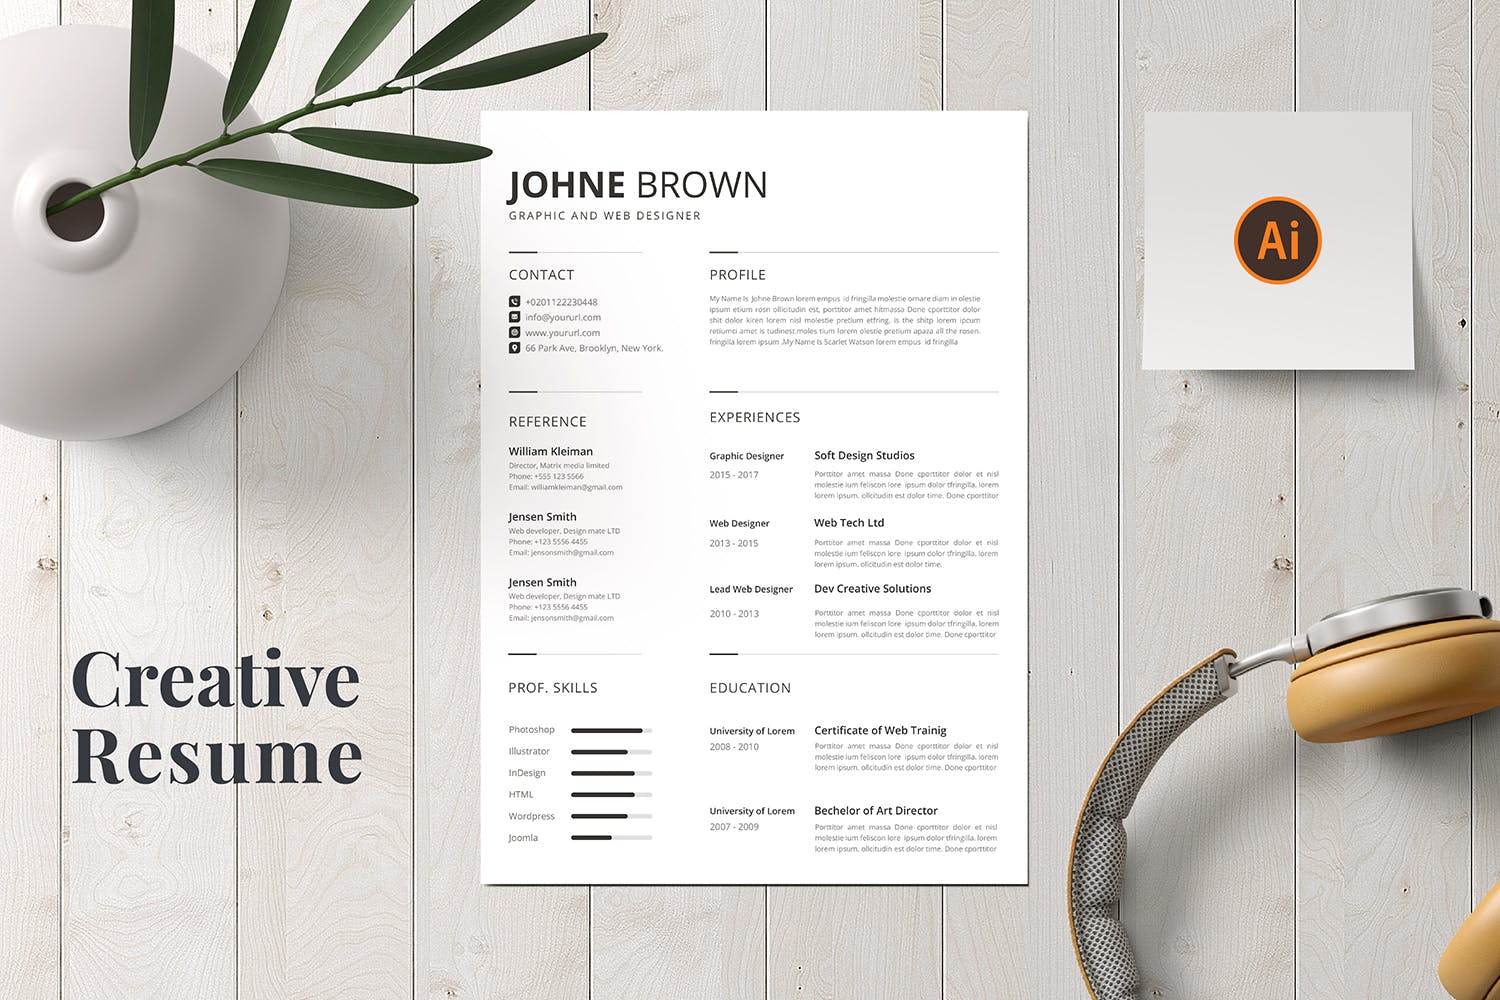 图形&网站设计师履历表排版设计模板 CV Resume插图